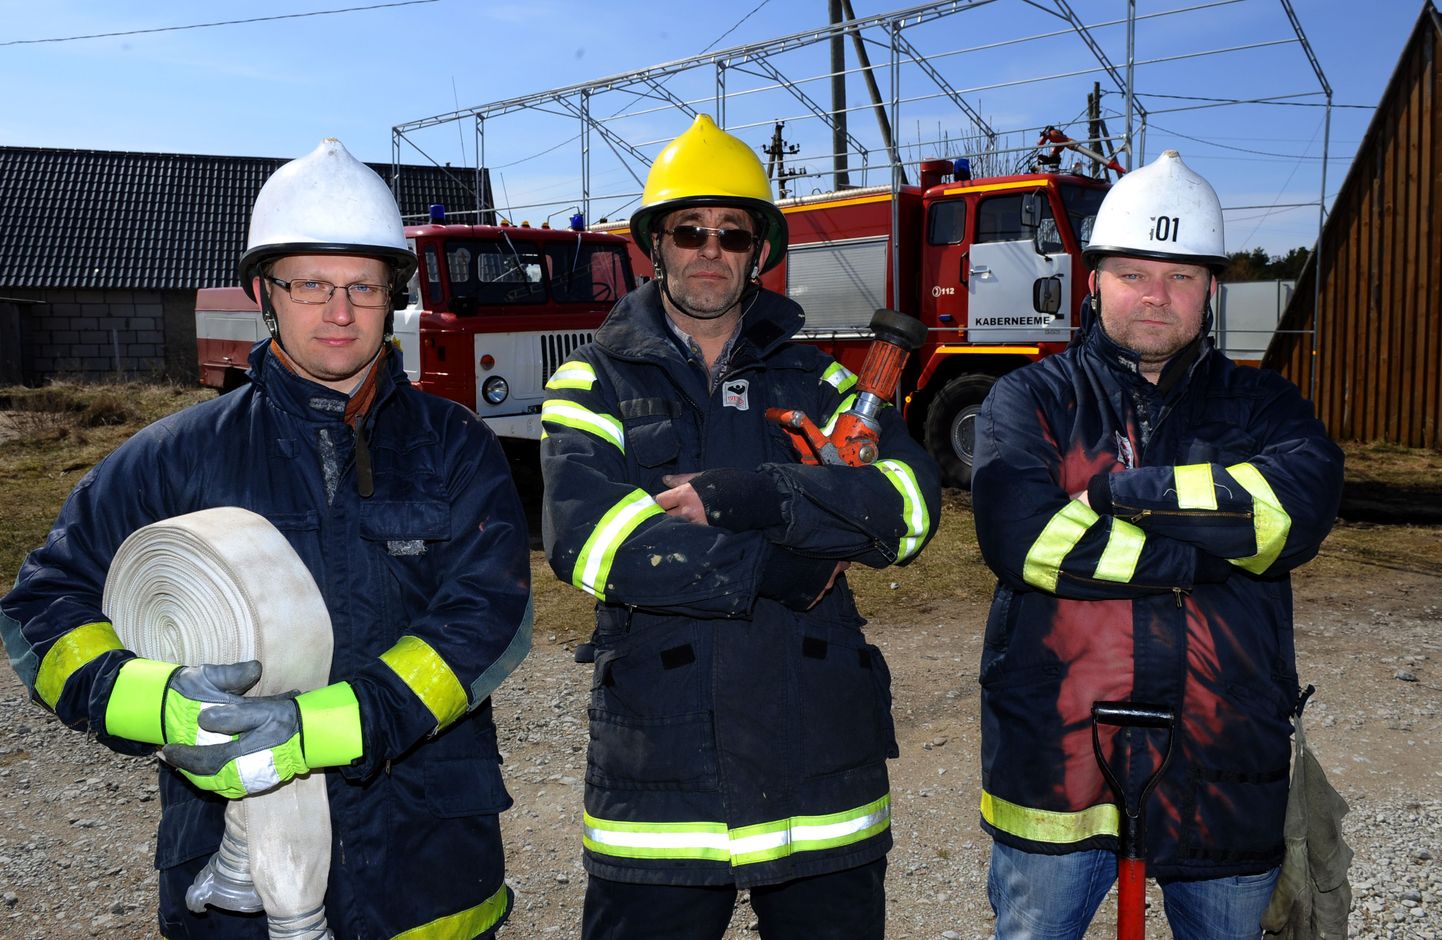 Vabatahtlikud tuletõrjujad
Vasakult: Tiit Suuder , Jaan Sepp ja Rait Killandi.